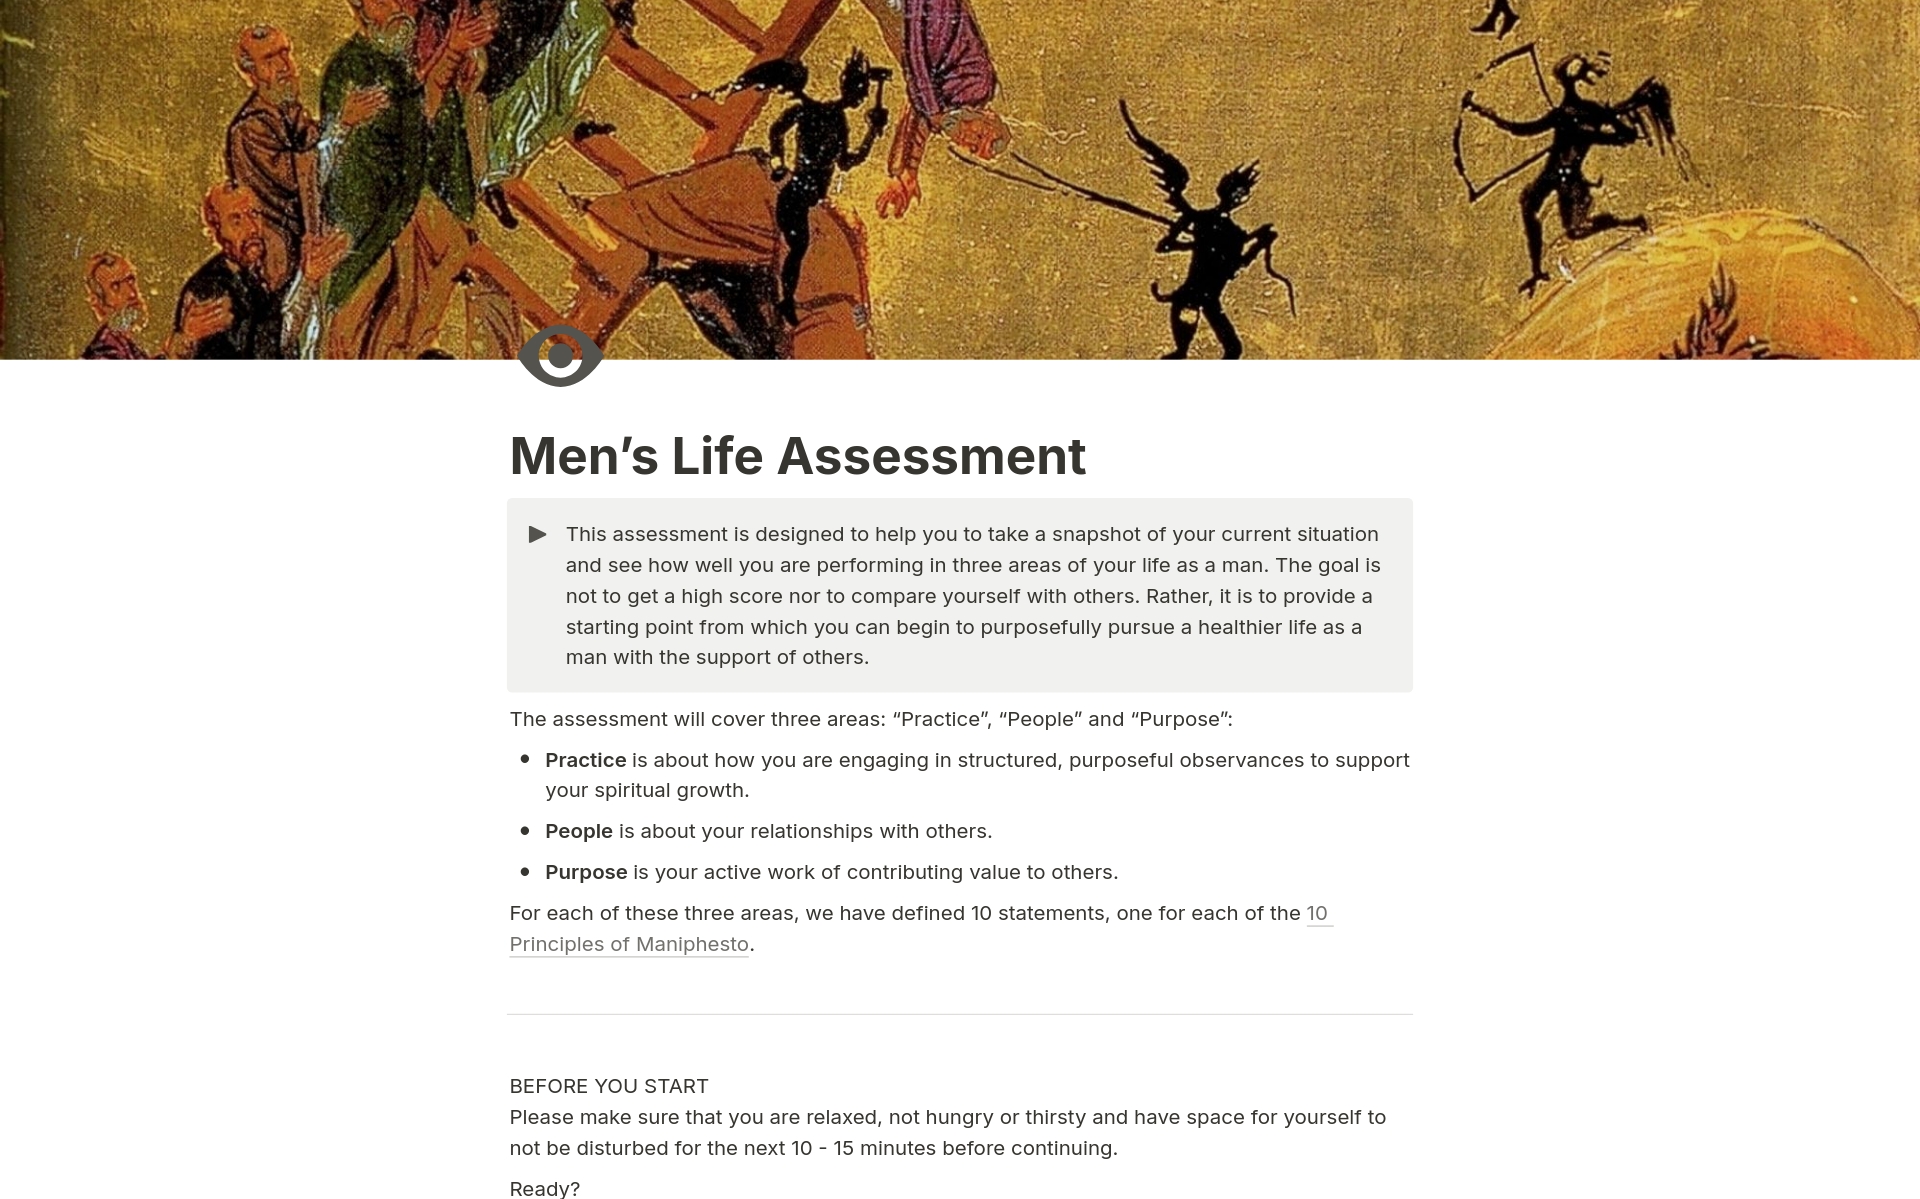 Vista previa de plantilla para Men's Life Assessment